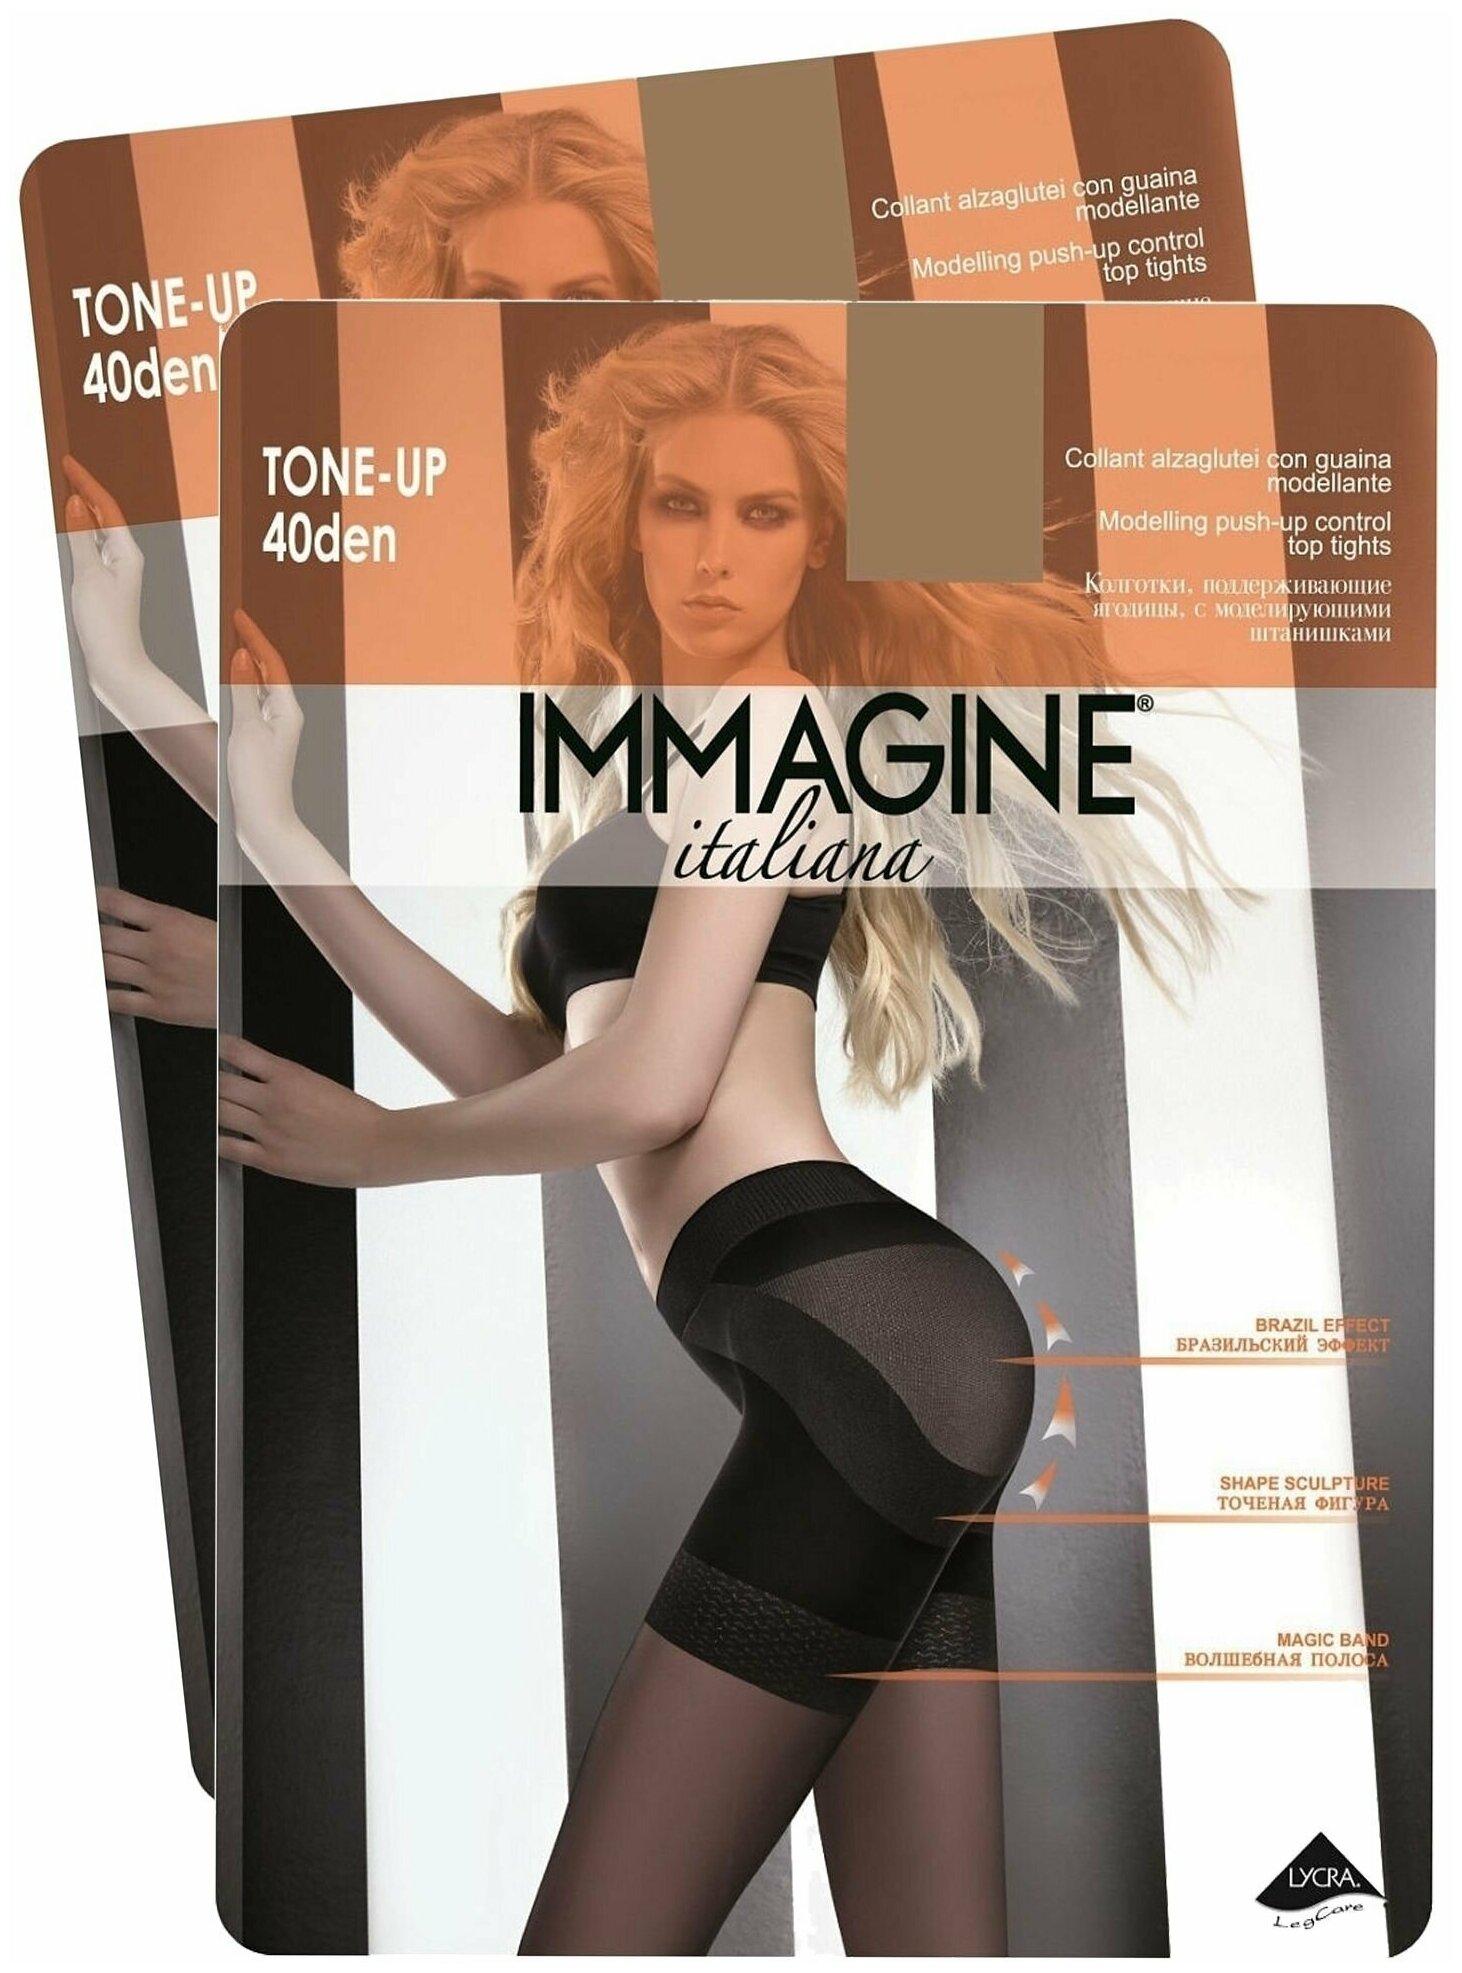 Колготки Immagine Tone Up, 40 den, 2 шт., размер 4, бежевый — купить в  интернет-магазине по низкой цене на Яндекс Маркете